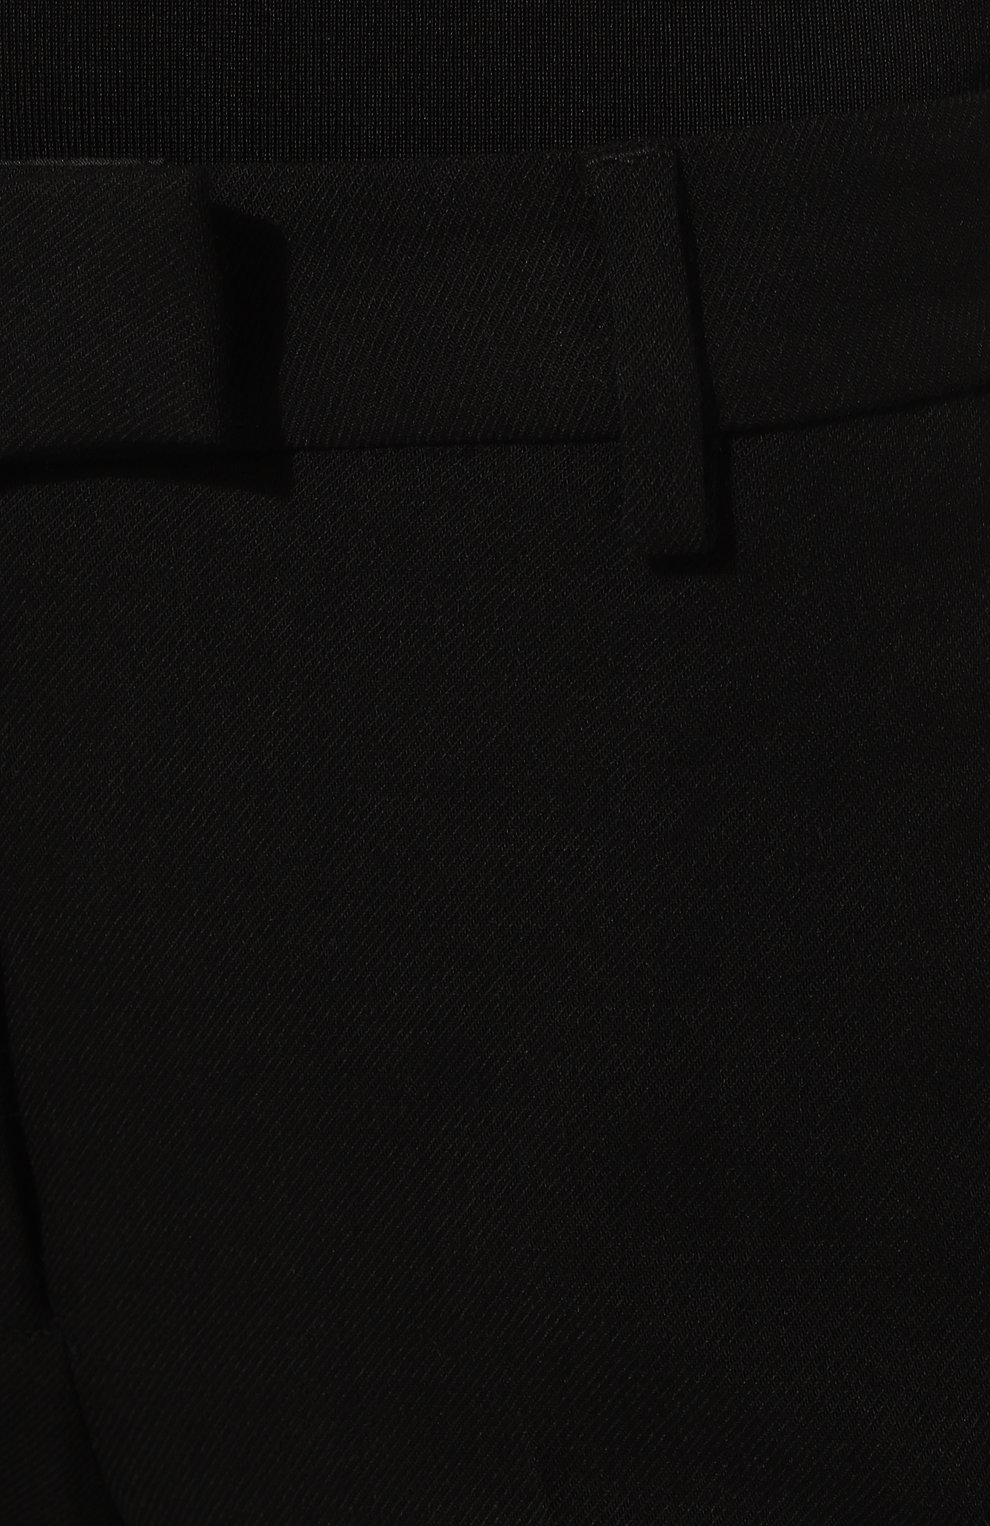 Женские брюки из шерсти и вискозы TRUSSARDI черного цвета, арт. 56P00379-1T006137 | Фото 5 (Длина (брюки, джинсы): Удлиненные; Материал внешний: Шерсть, Вискоза; Женское Кросс-КТ: Брюки-одежда; Силуэт Ж (брюки и джинсы): Расклешенные; Стили: Кэжуэл)